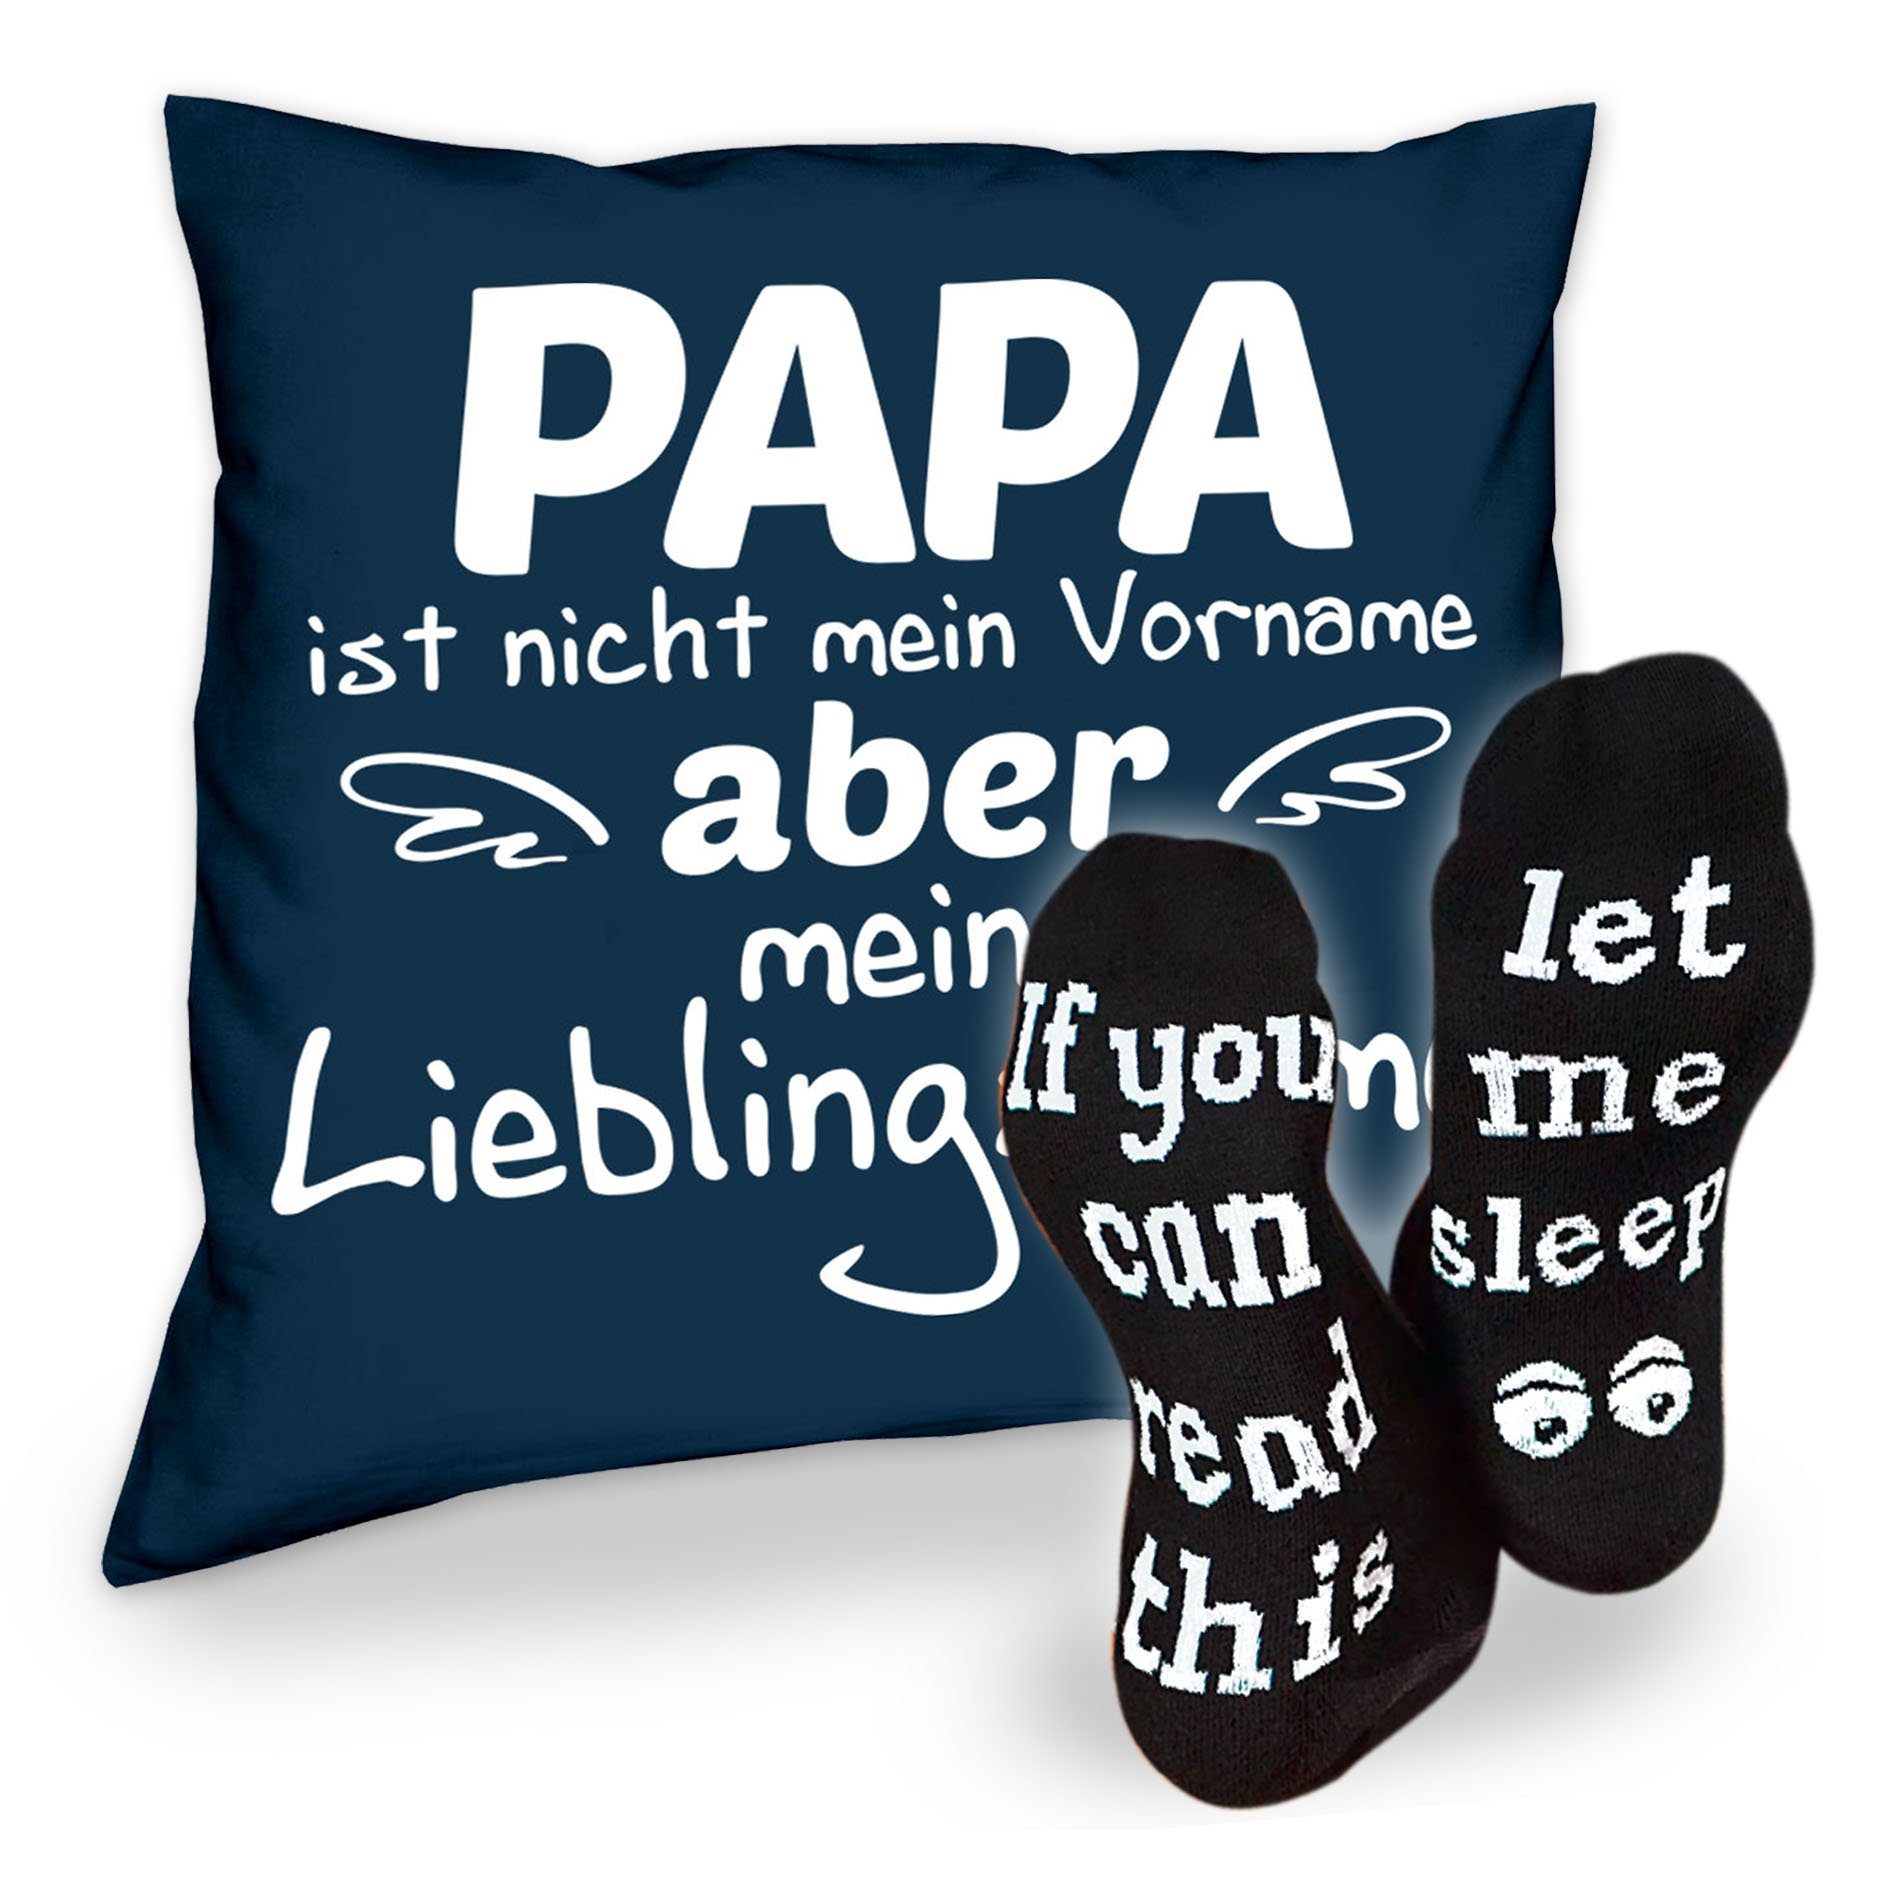 Sprüche Weihnachtsgeschenk & Socken Kissen navy-blau Soreso® Sleep, Geschenkidee Dekokissen Lieblingsname Papa